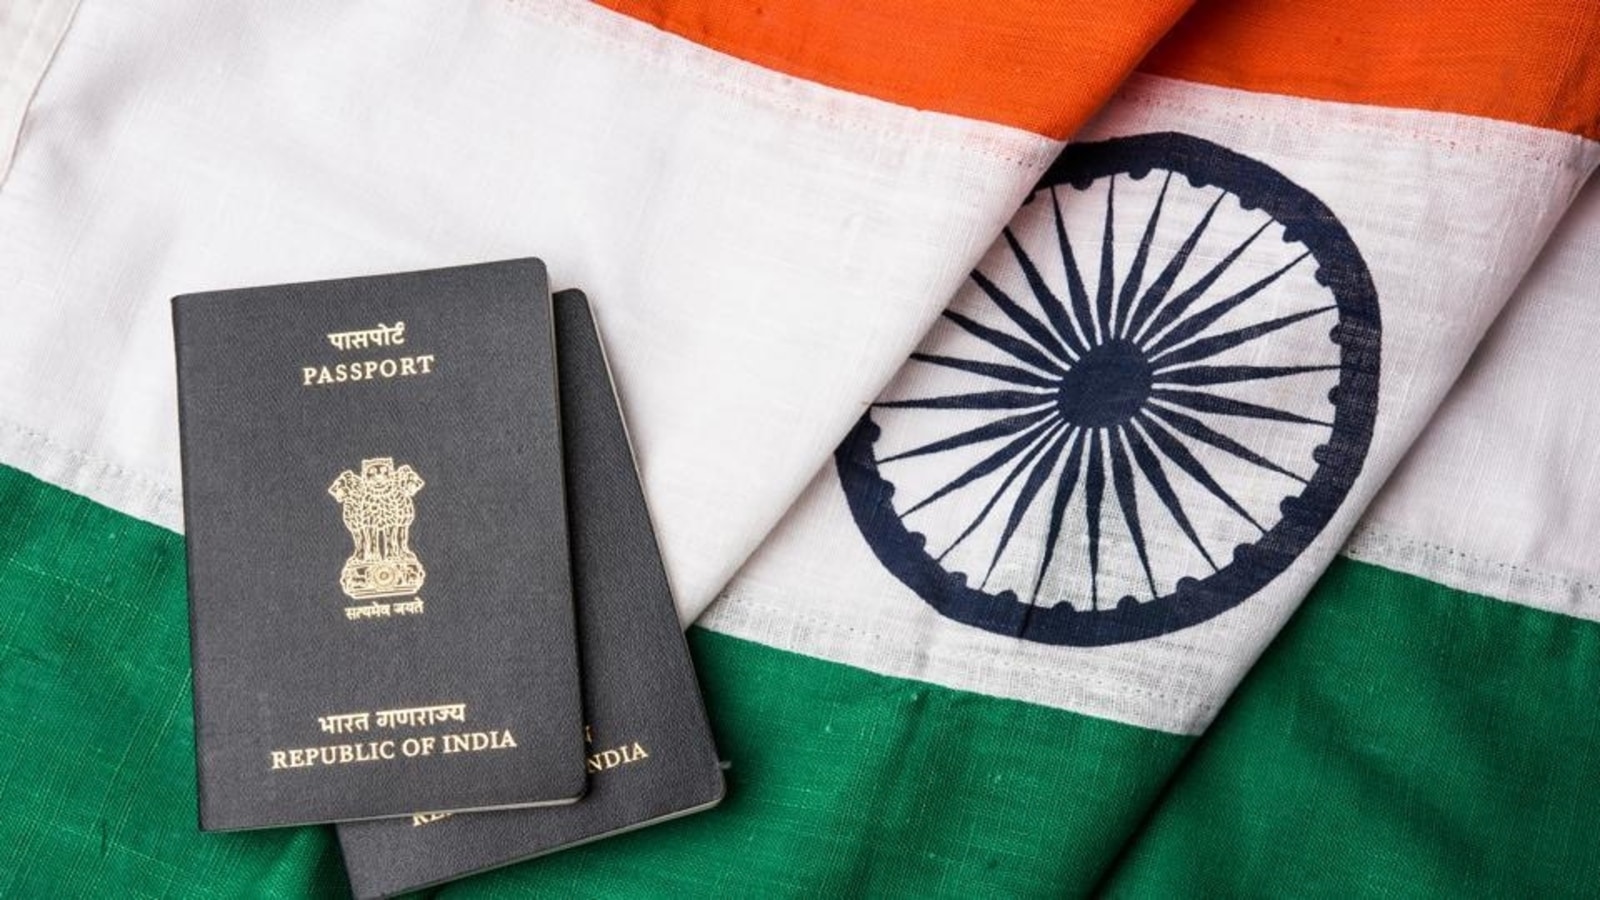 travel visa free on indian passport